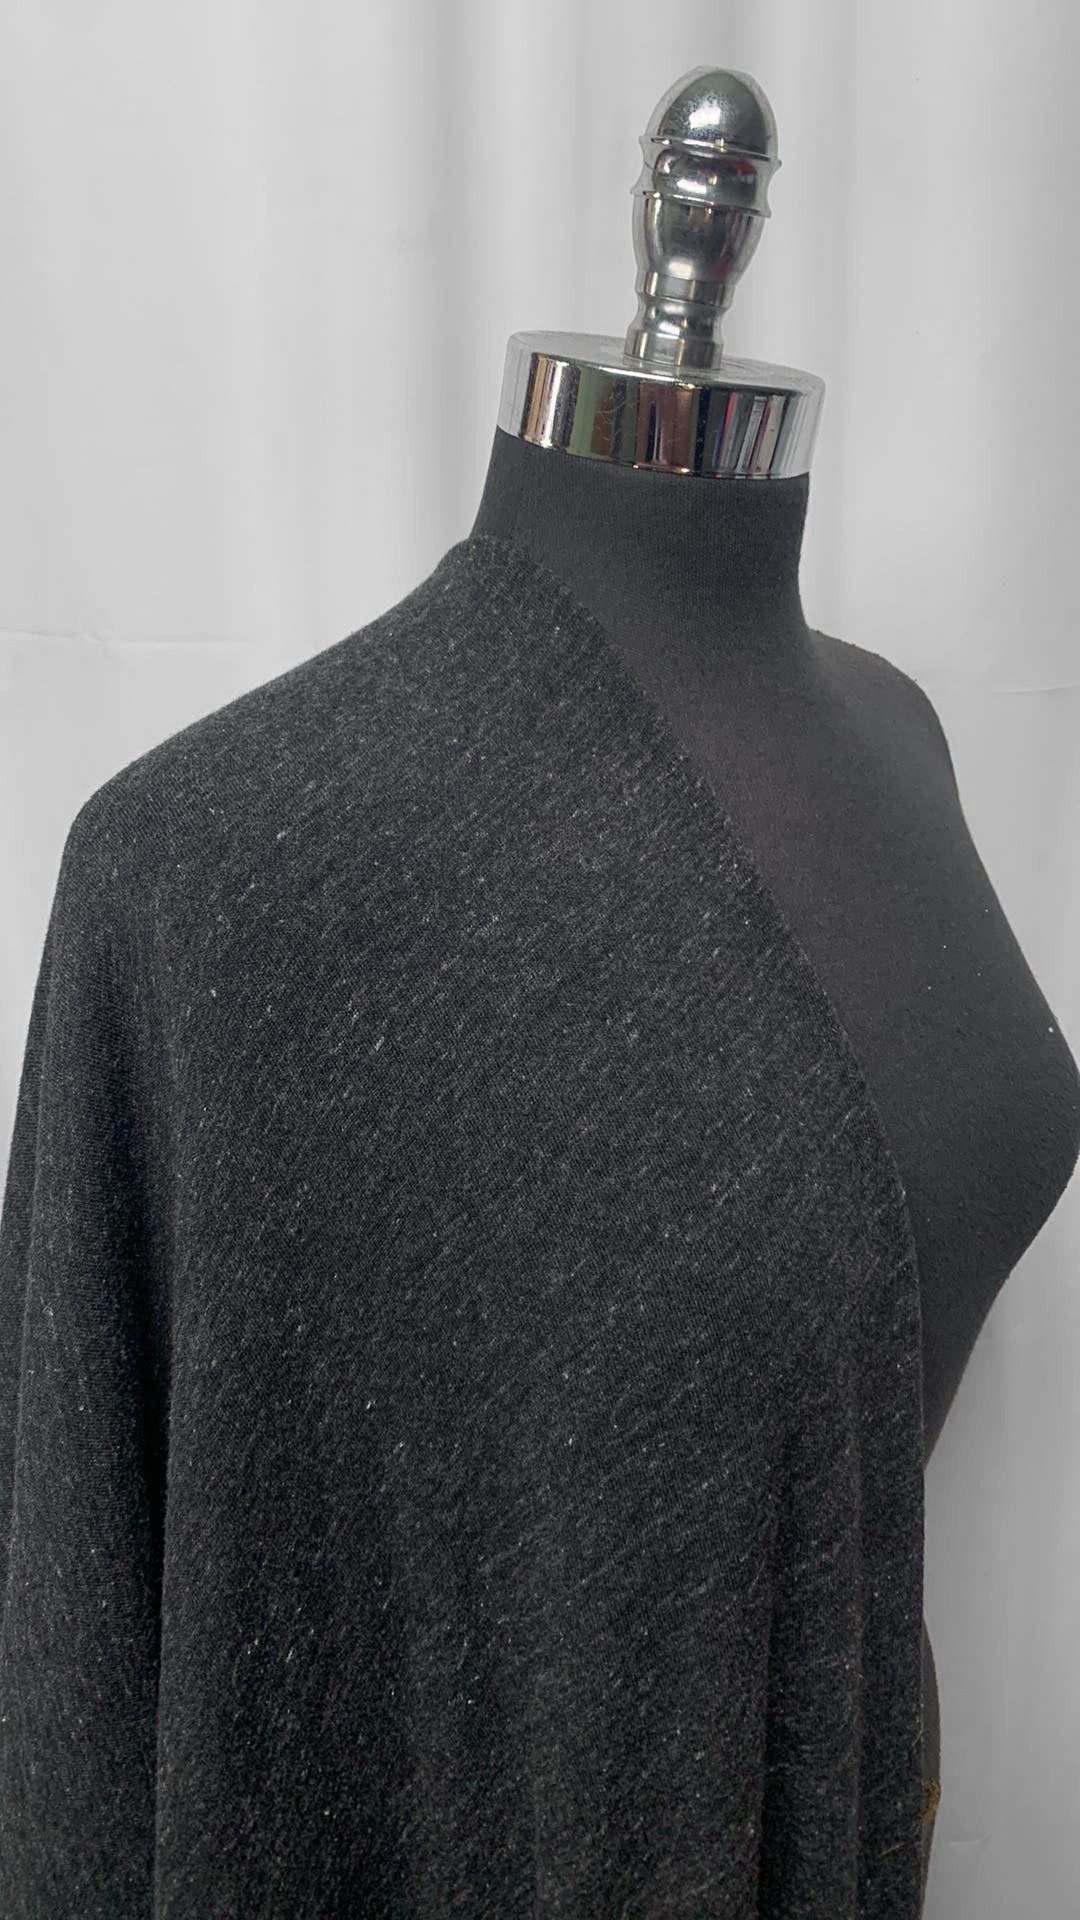 Black - Cotton/Poly Loop Terry Sweatshirt (72" Wide) - 2 Yard Cut